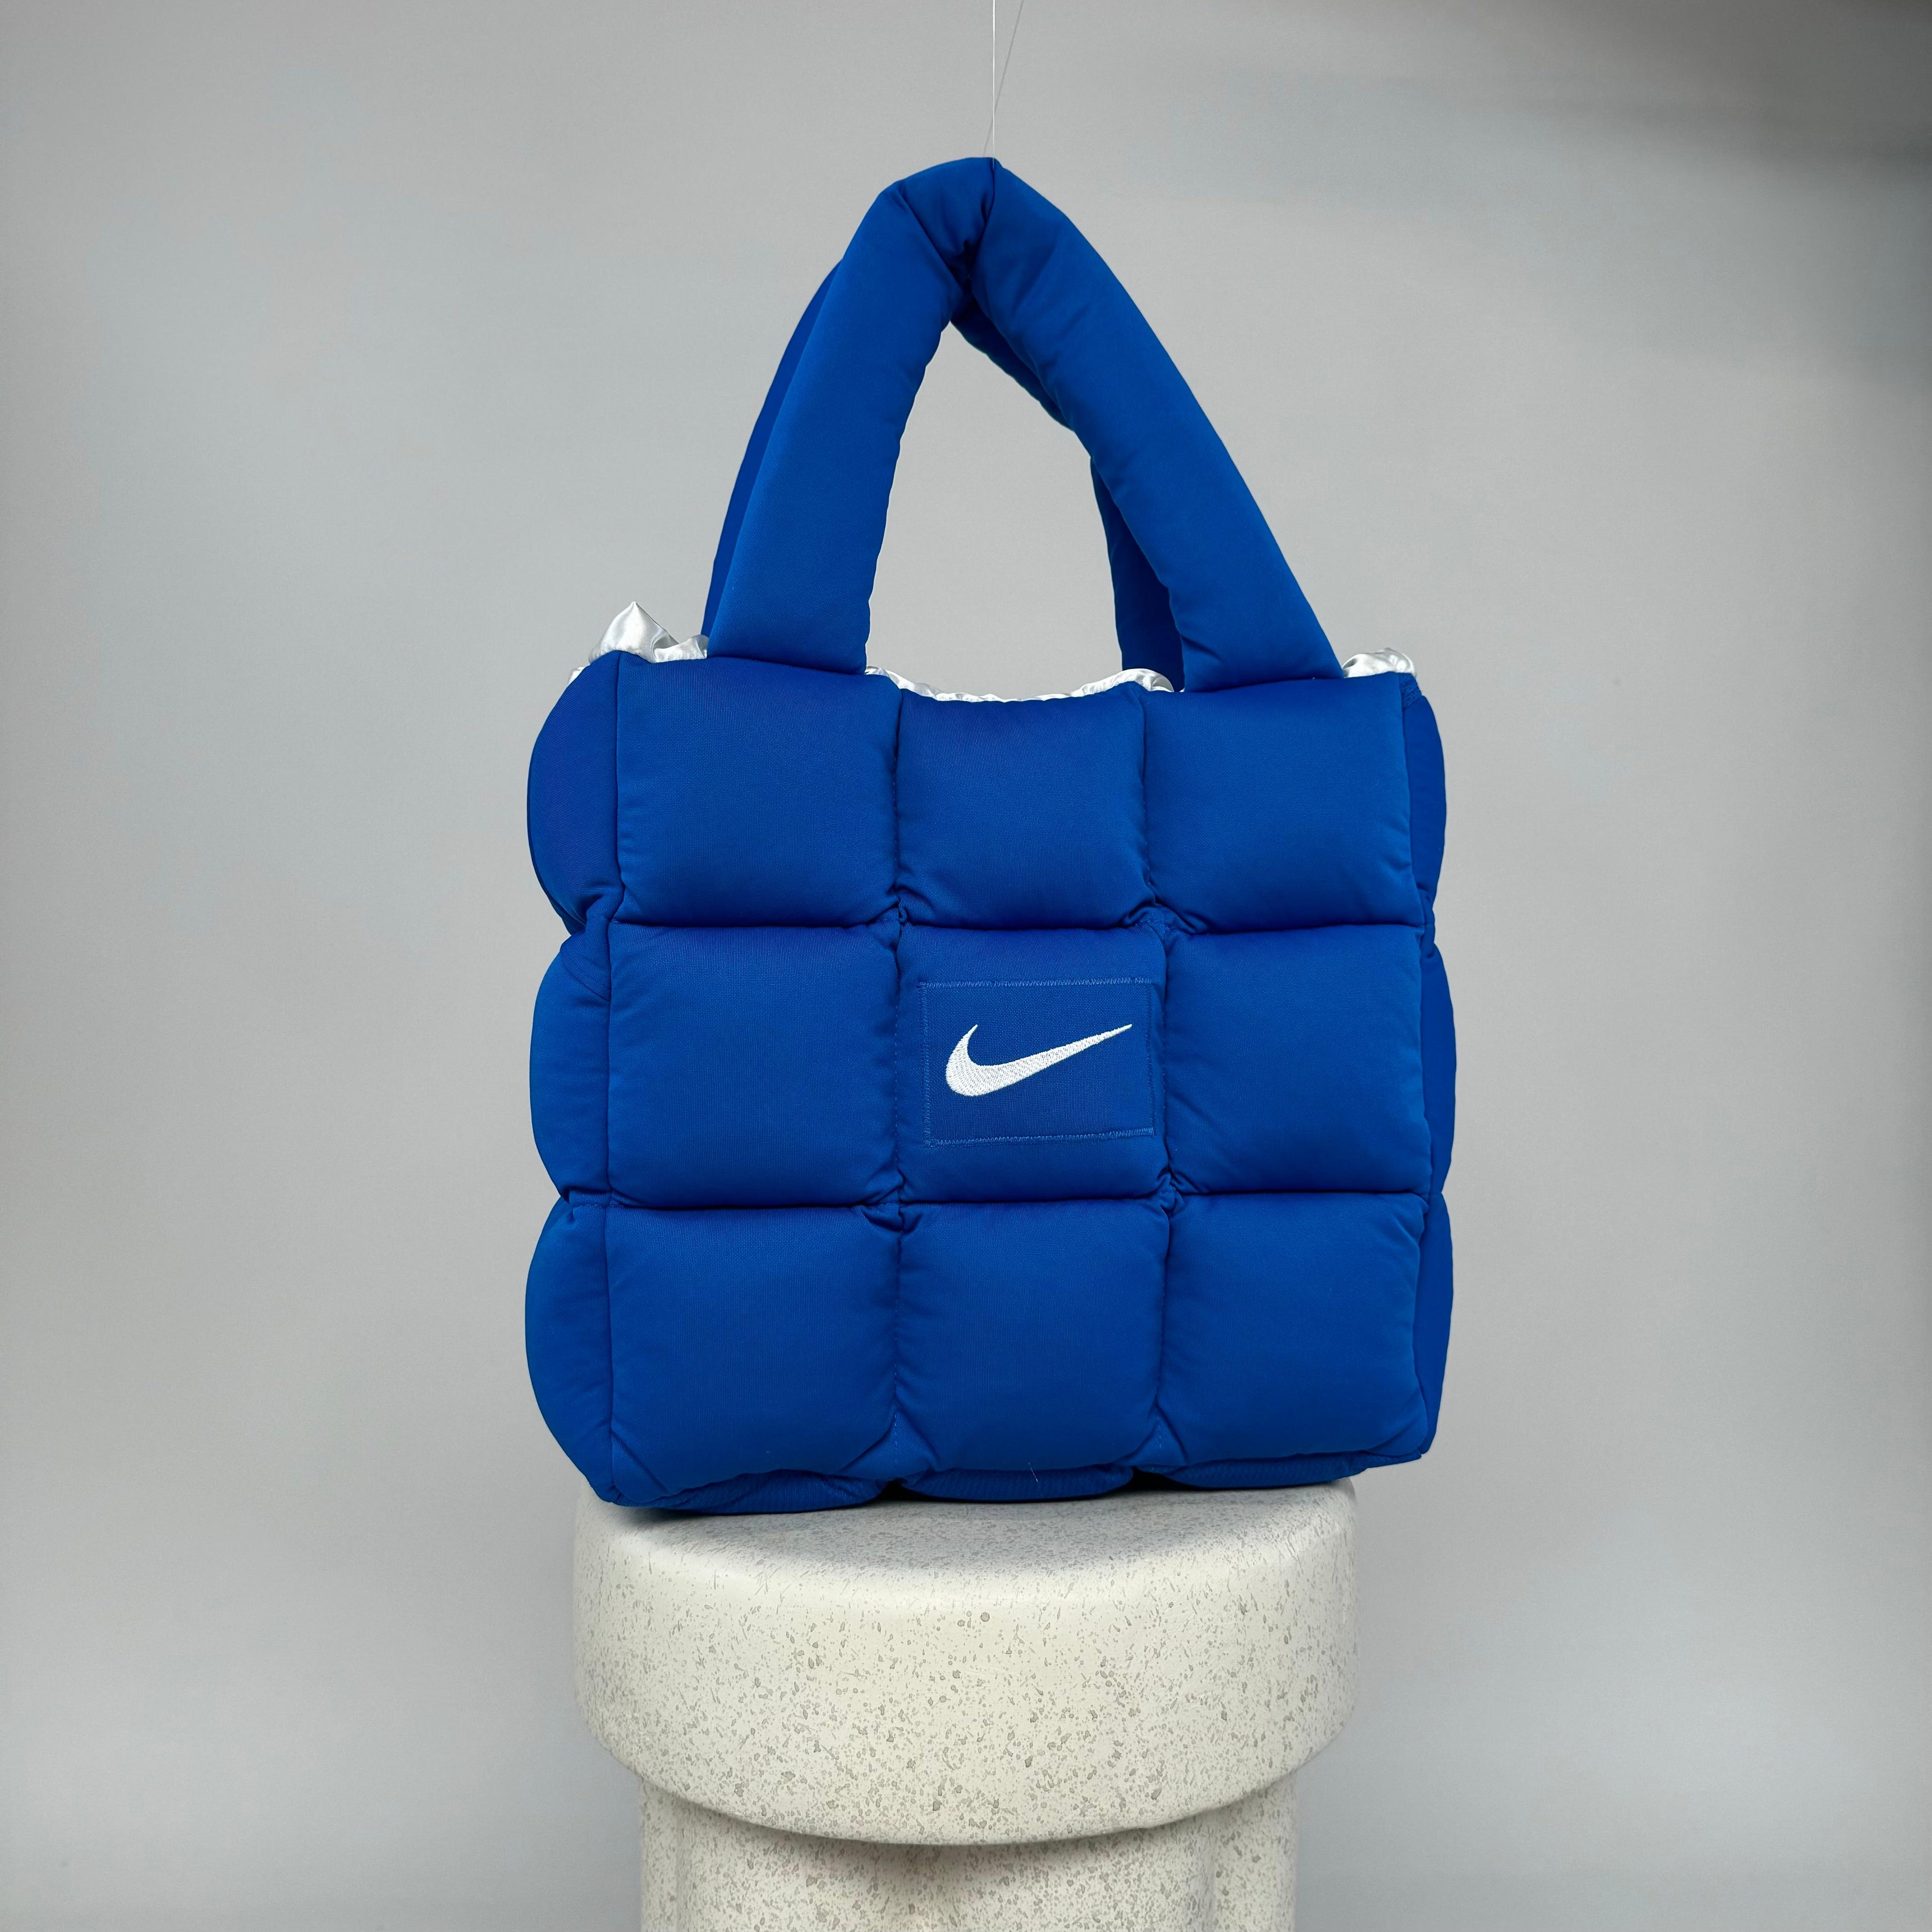 Boss Up Blue Puffer Bag